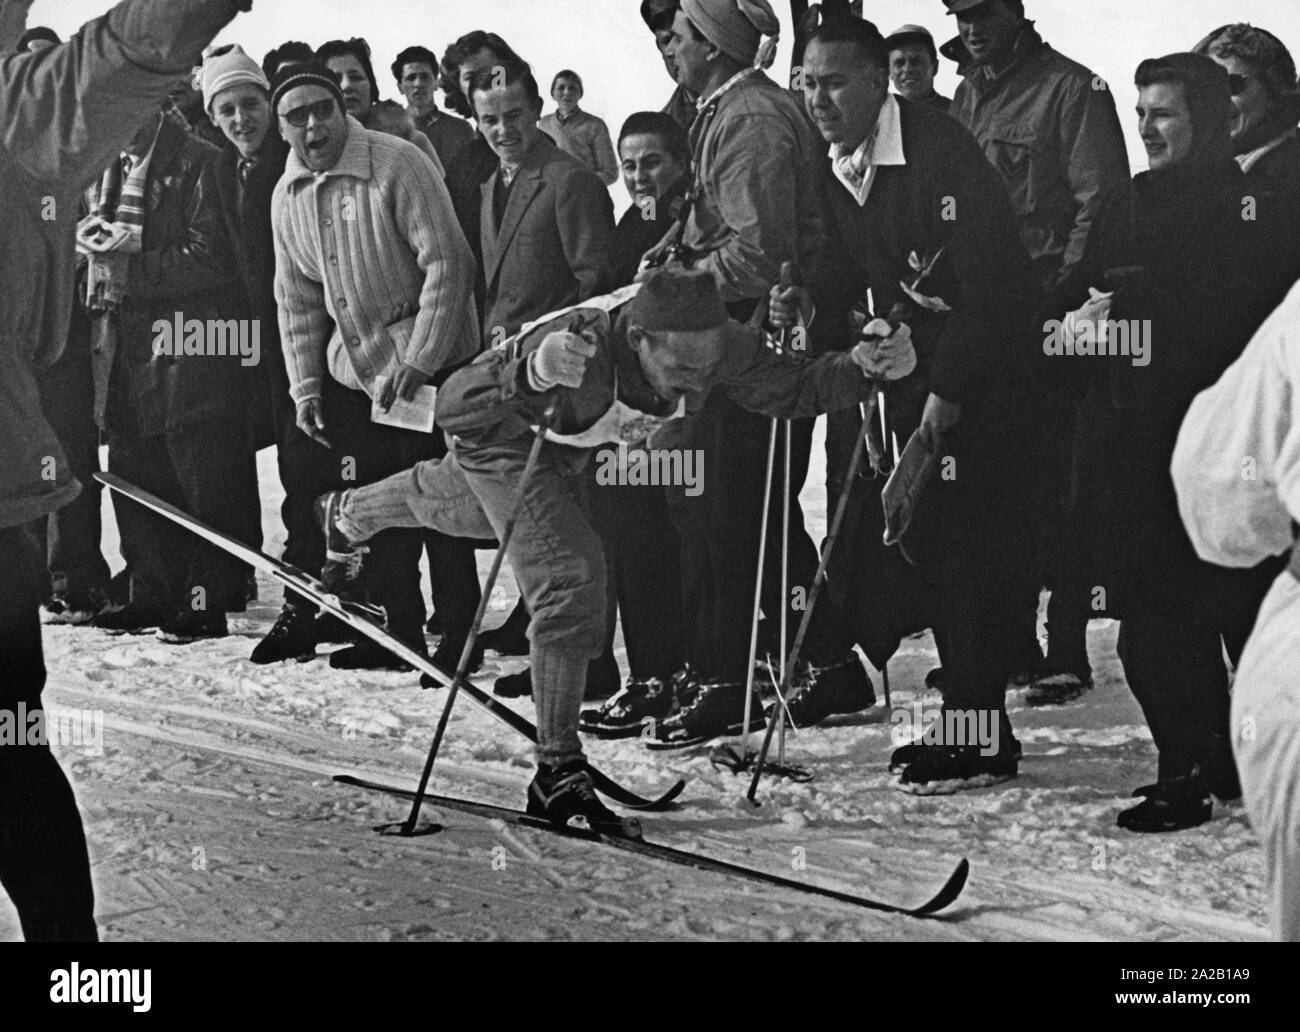 La imagen muestra un participante de los 30 km de esquí de fondo en los Juegos Olímpicos de Invierno de 1956 en Cortina d'Ampezzo. Es Veikko Hakulinen de Finlandia, quien también ganó la medalla de oro en esta carrera. La línea de meta está rodeado por la prensa y los fans que están alentando a él. Foto de stock